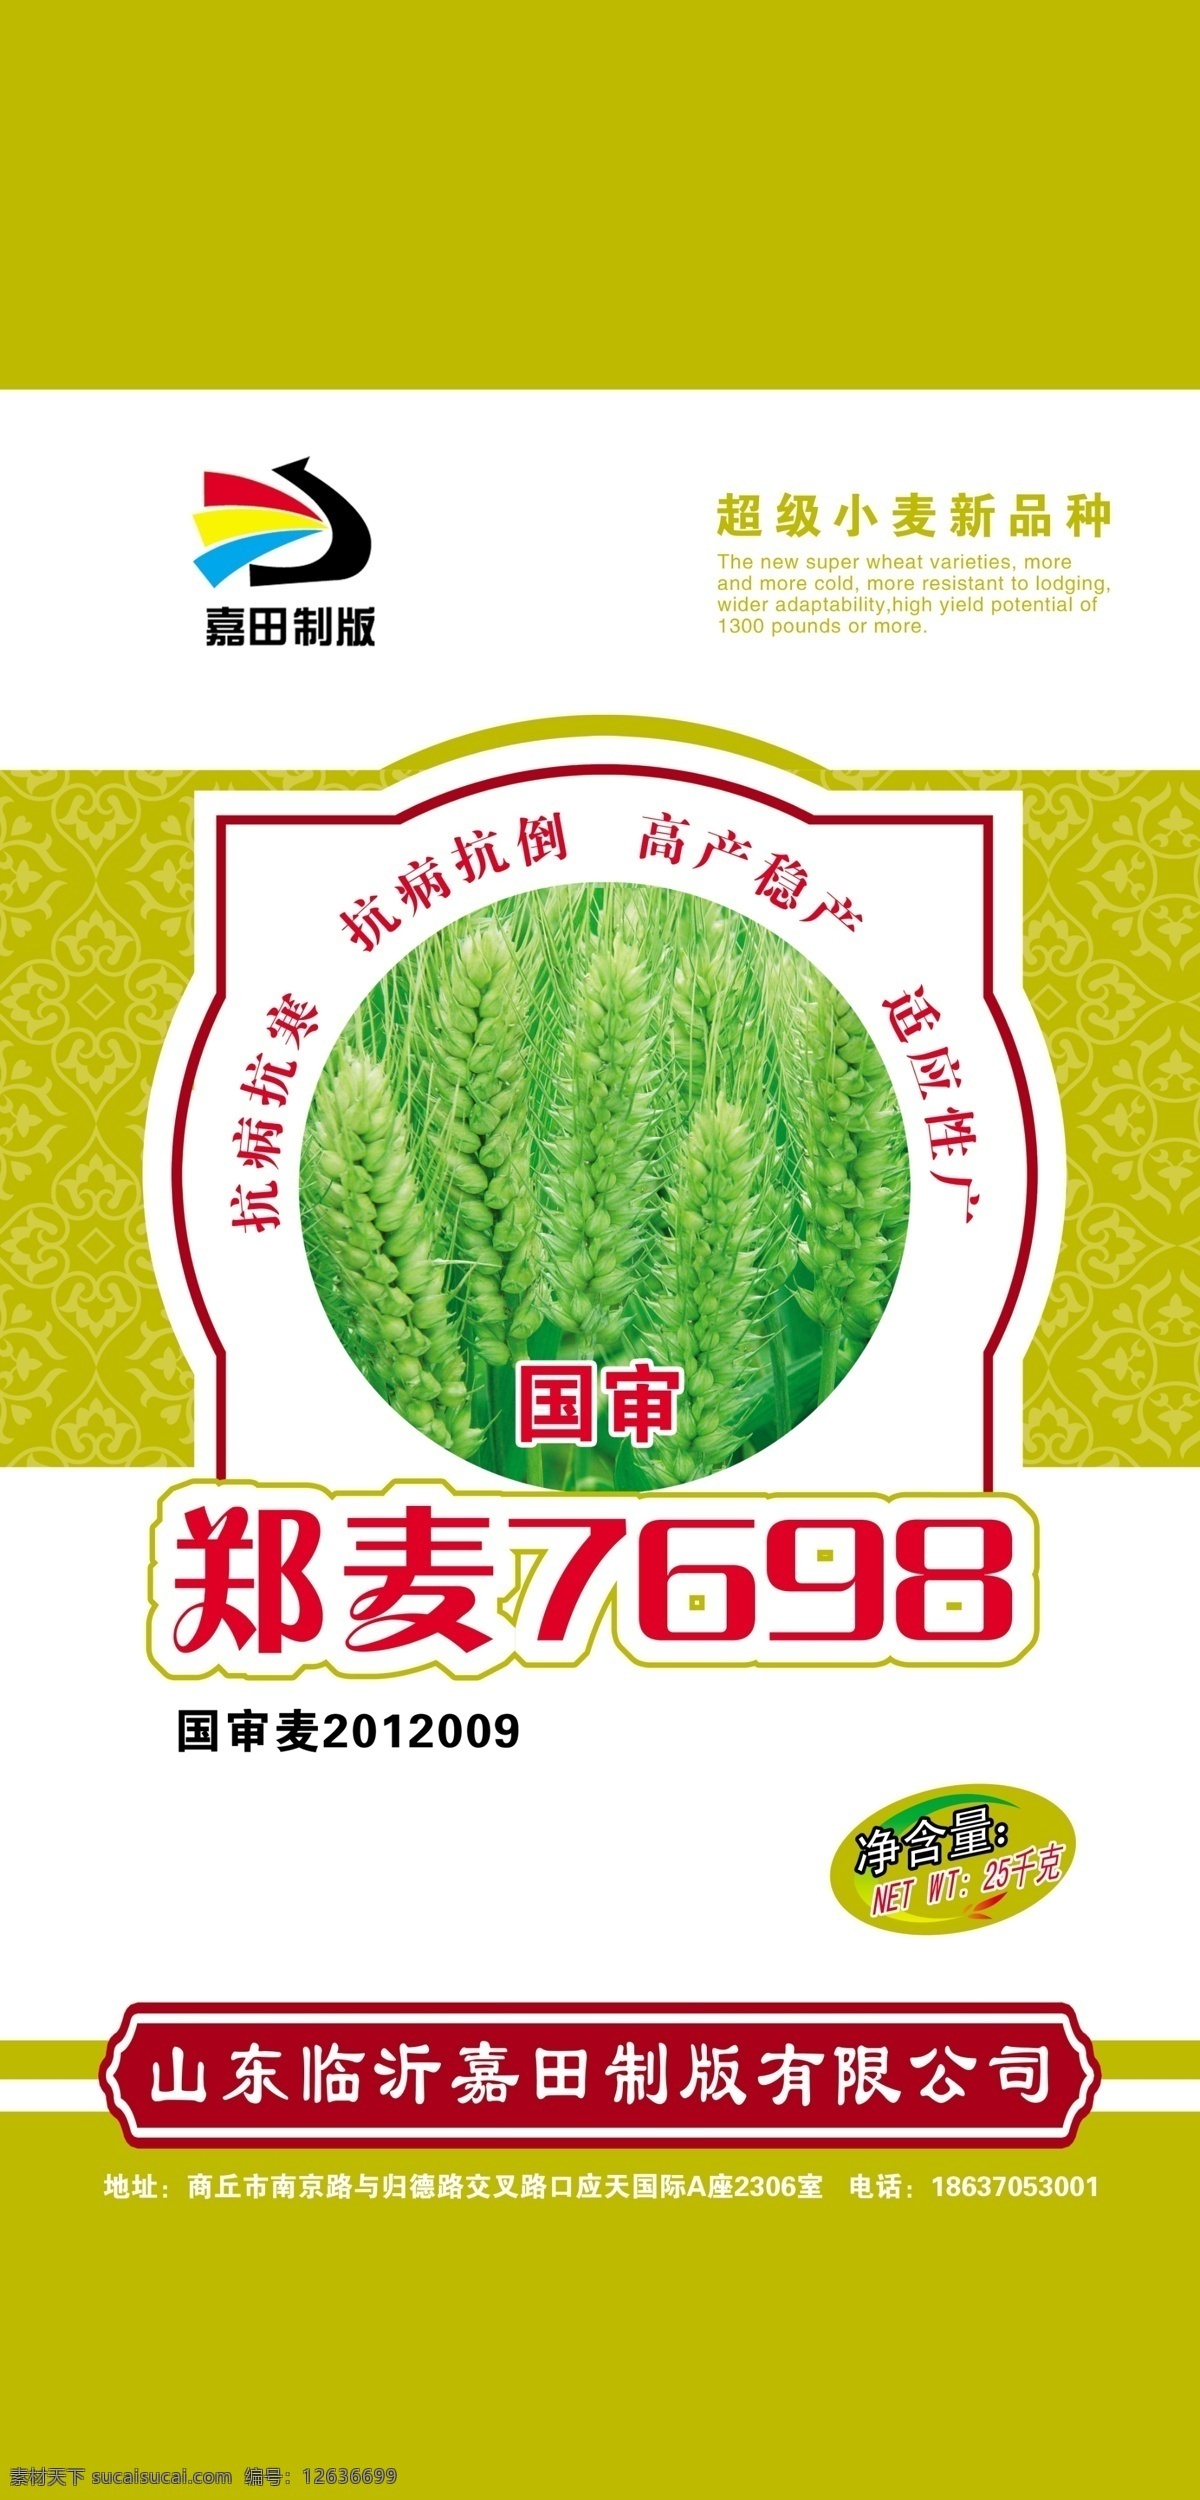 小麦种子 小麦 种子 包装 商标 logo 小麦包装 包装设计 白色